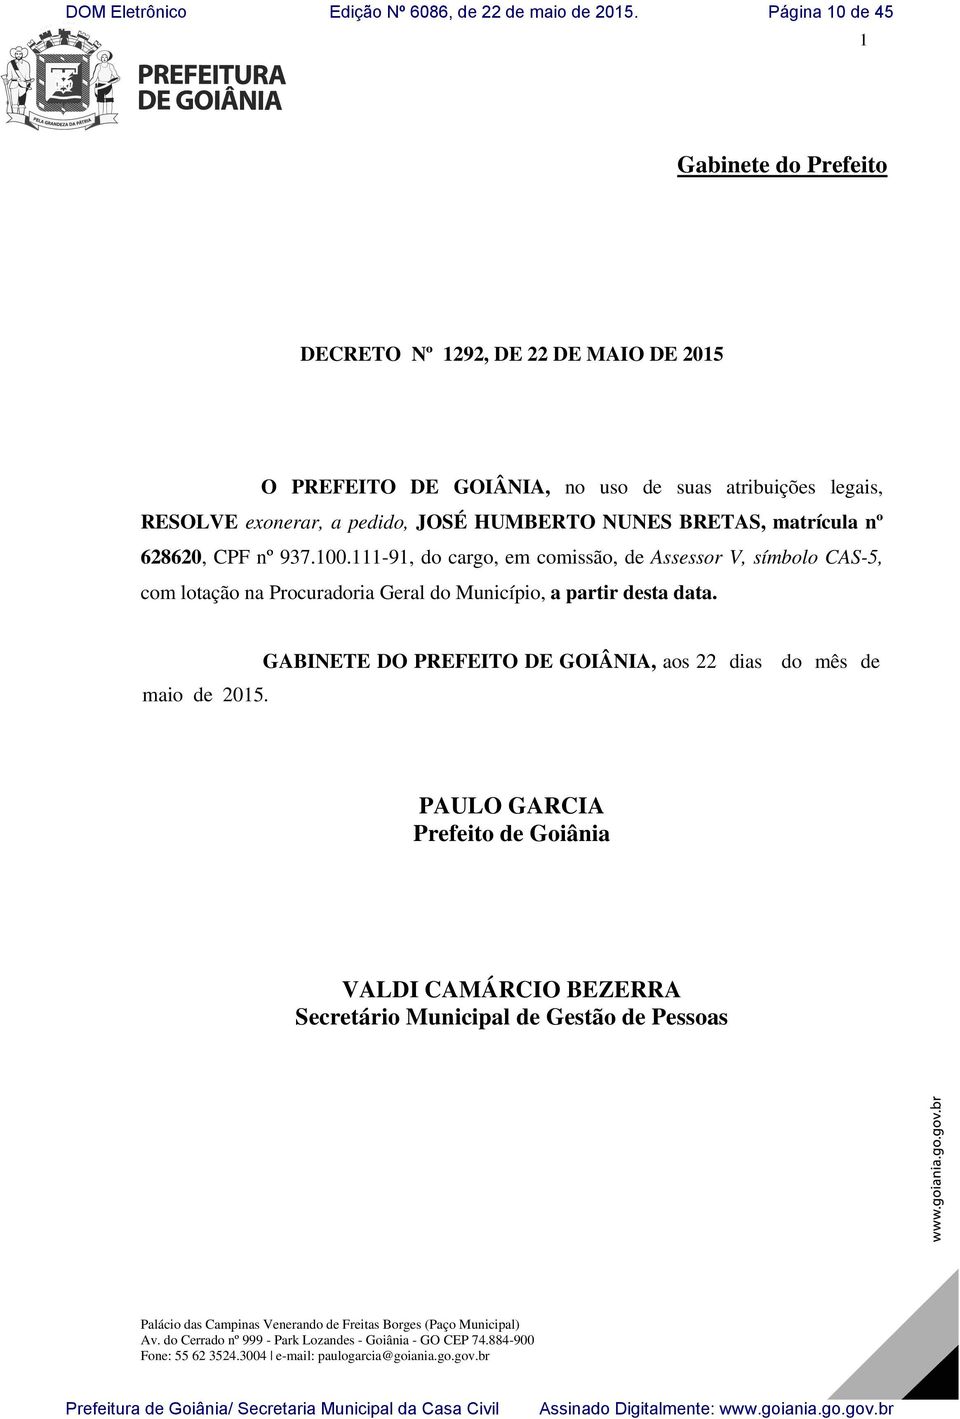 111-91, do cargo, em comissão, de Assessor V, símbolo CAS-5, com lotação na Procuradoria Geral do Município, a partir desta data. maio de 2015.